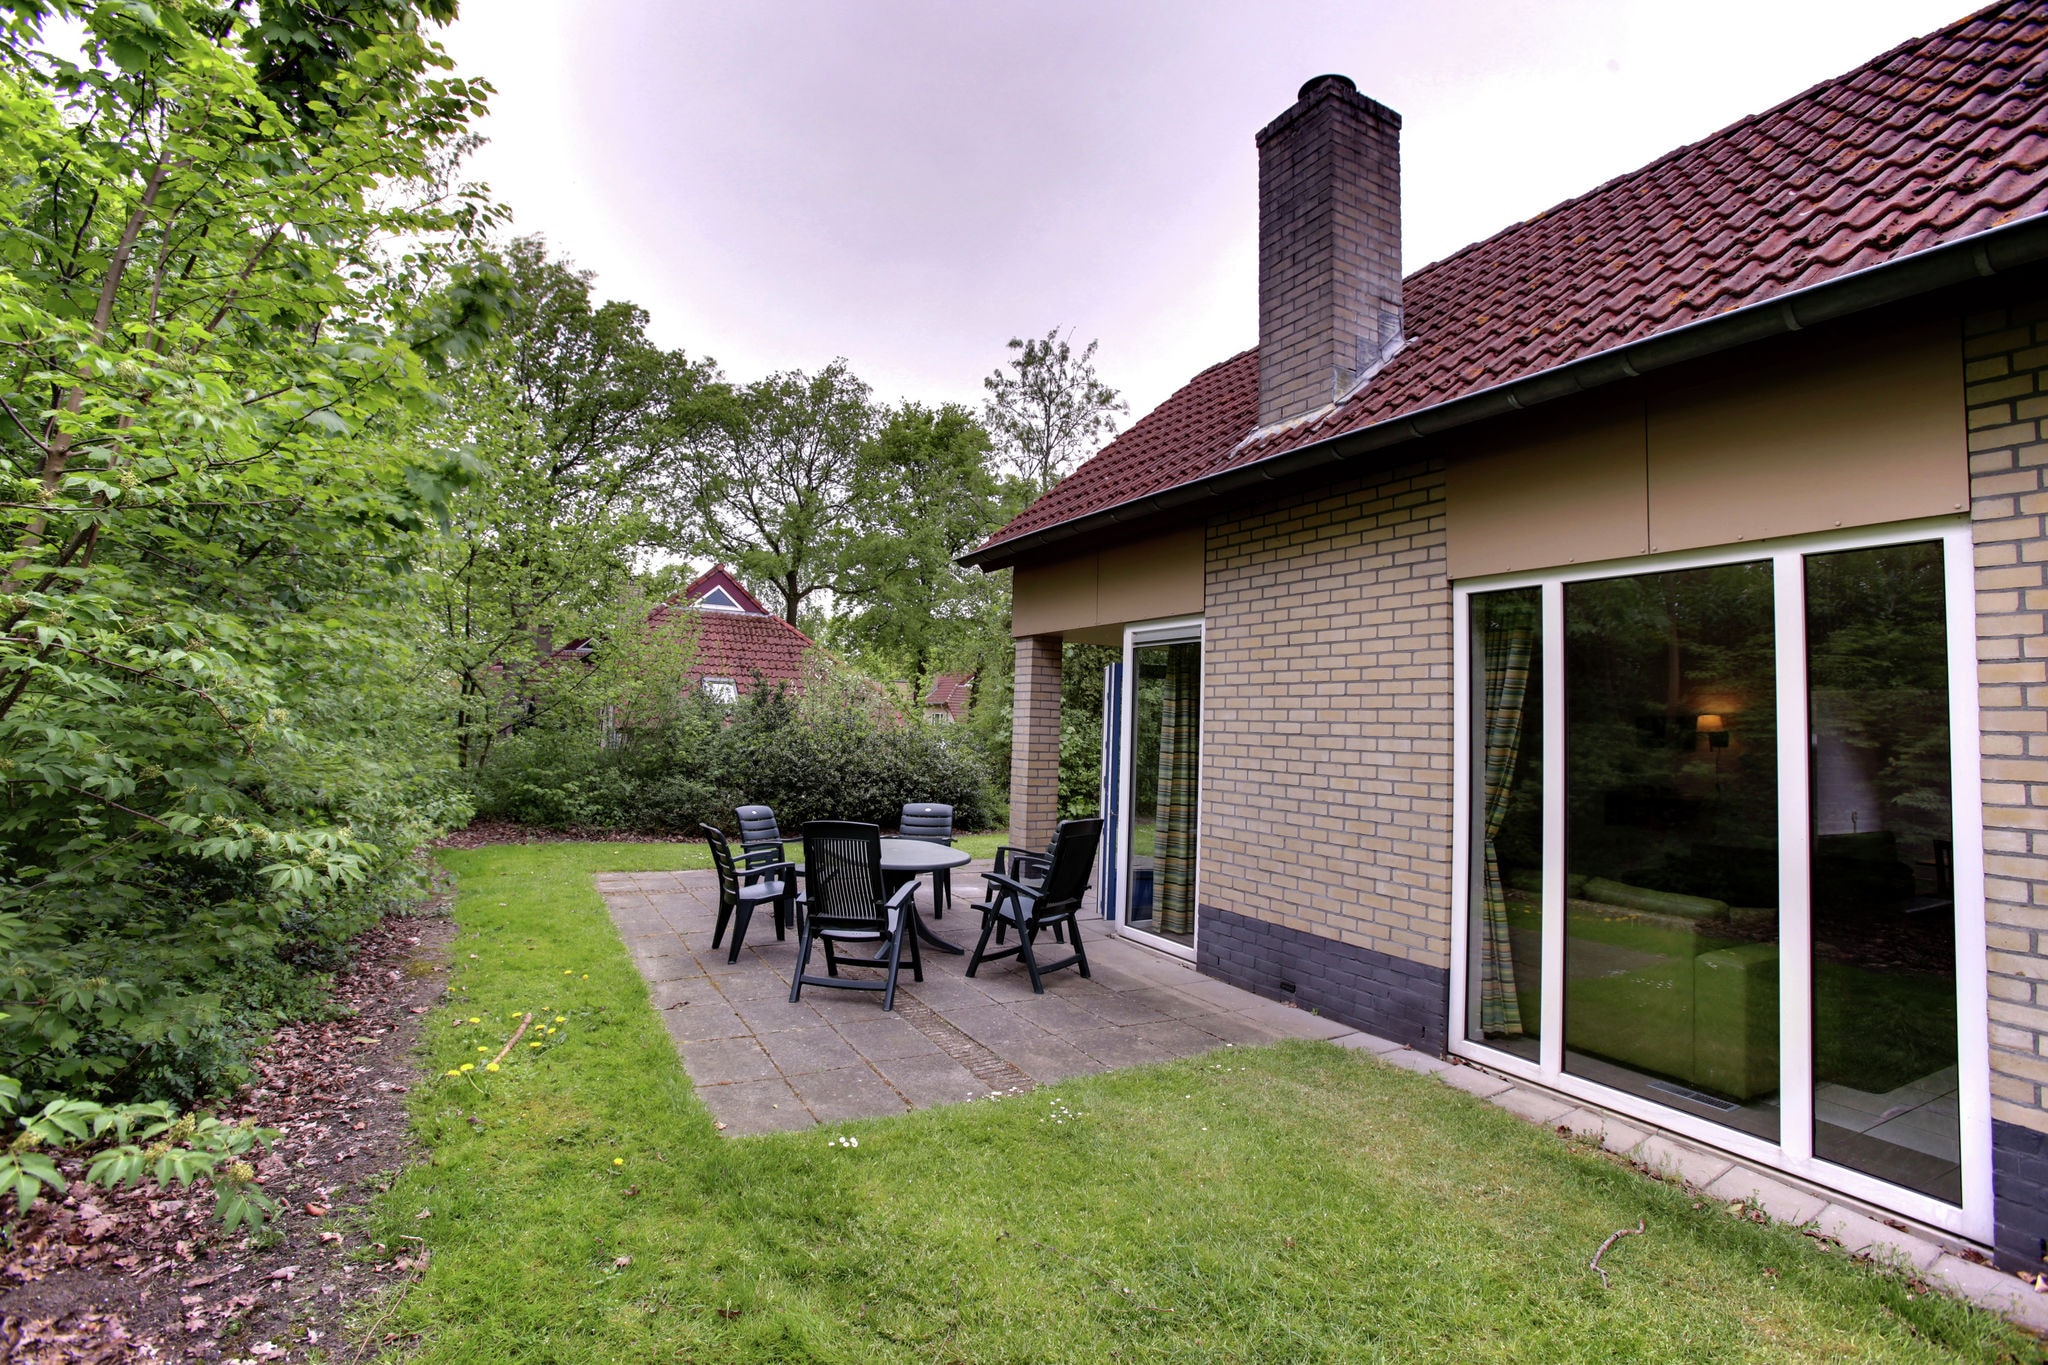 Maison de vacances avec jardin, près de Zwolle